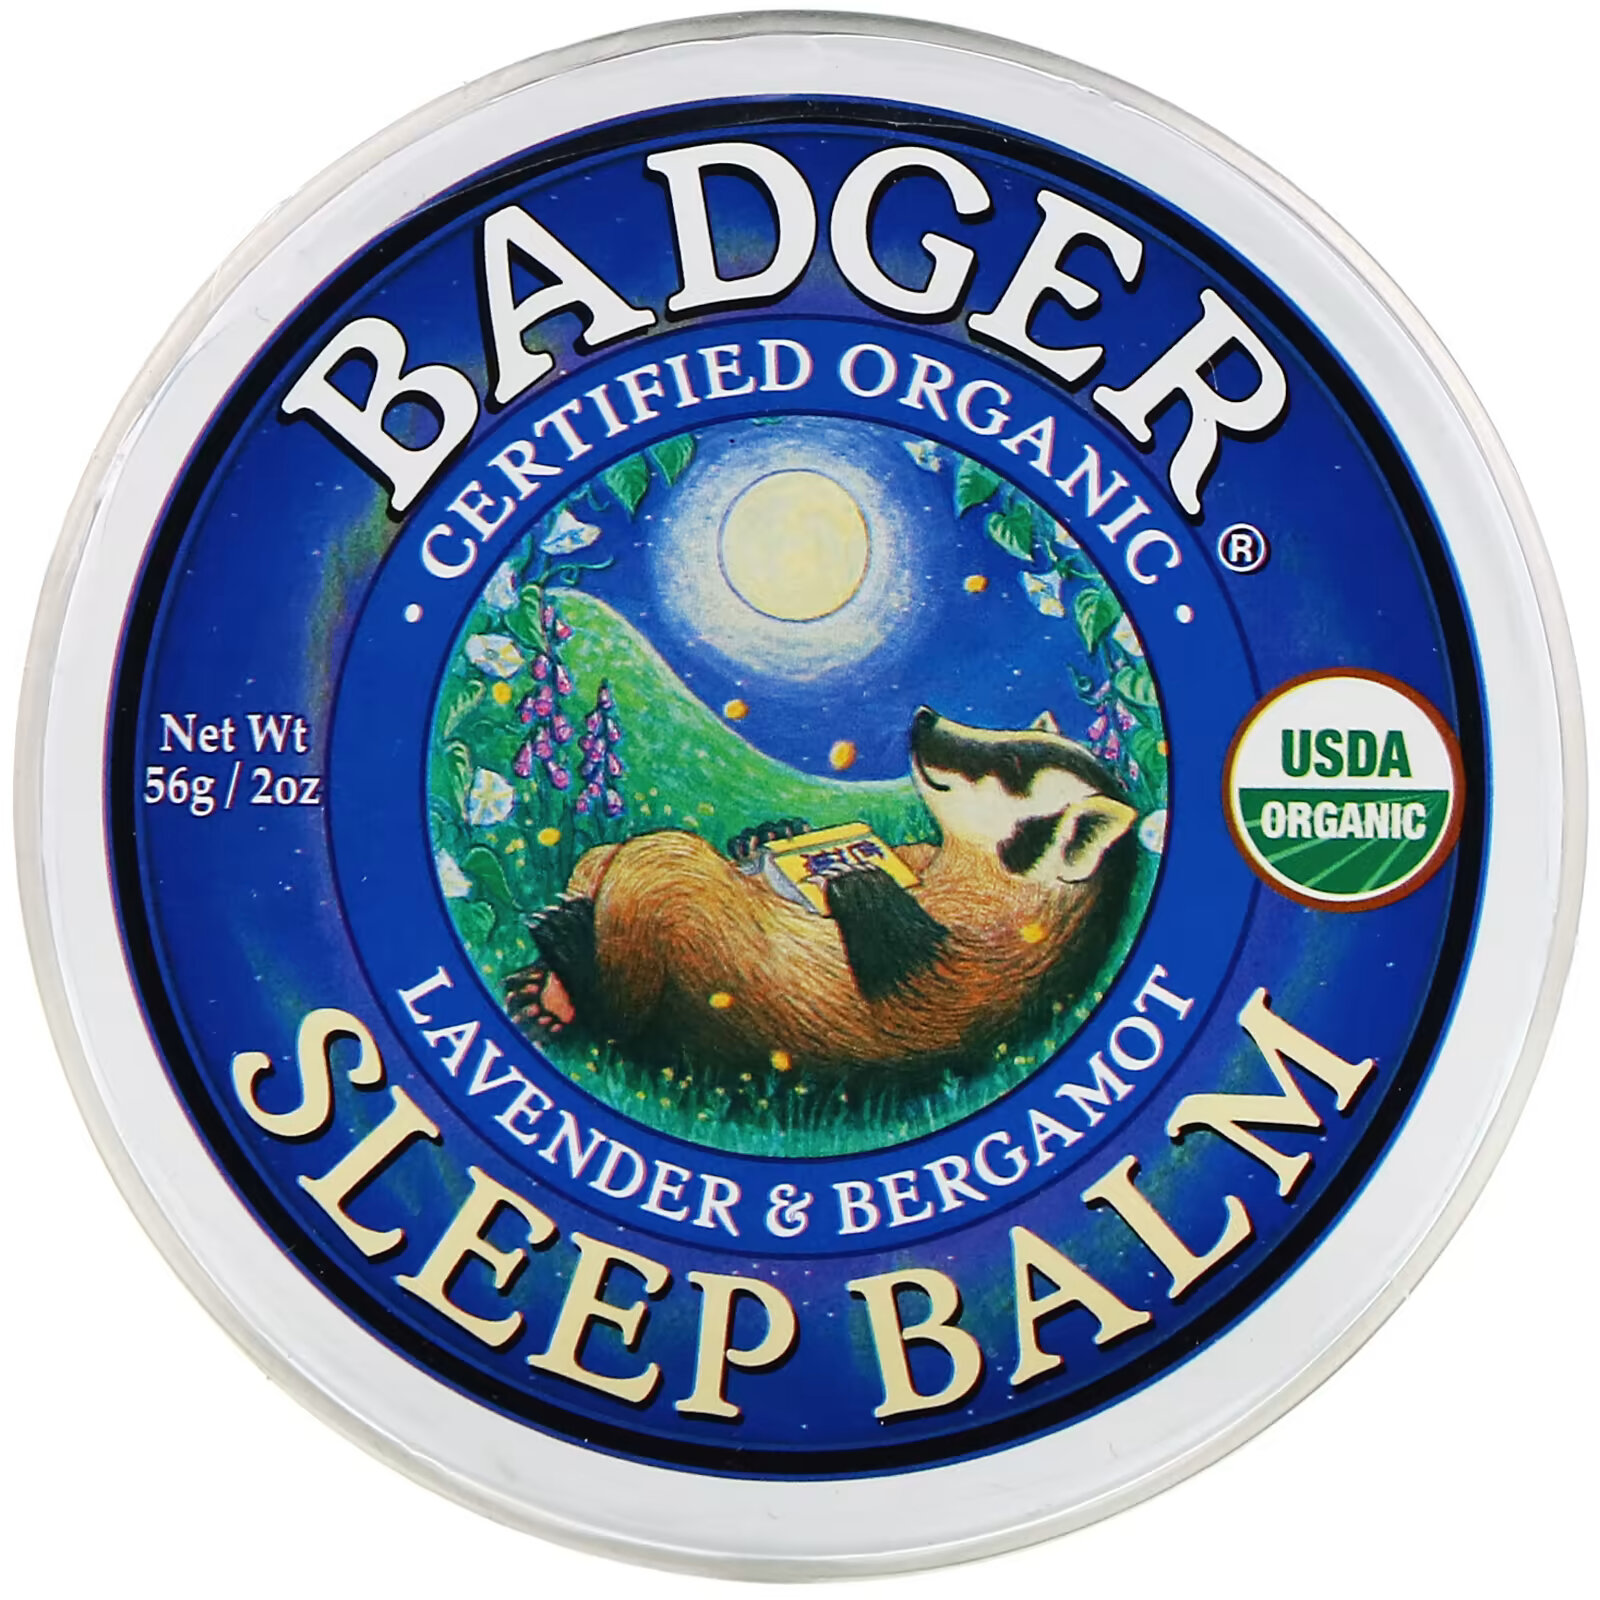 Badger Company, органический бальзам для сна, лаванда и бергамот, 56 г (2 унции) badger company бальзам для ног перечная мята и чайное дерево 56 г 2 унции